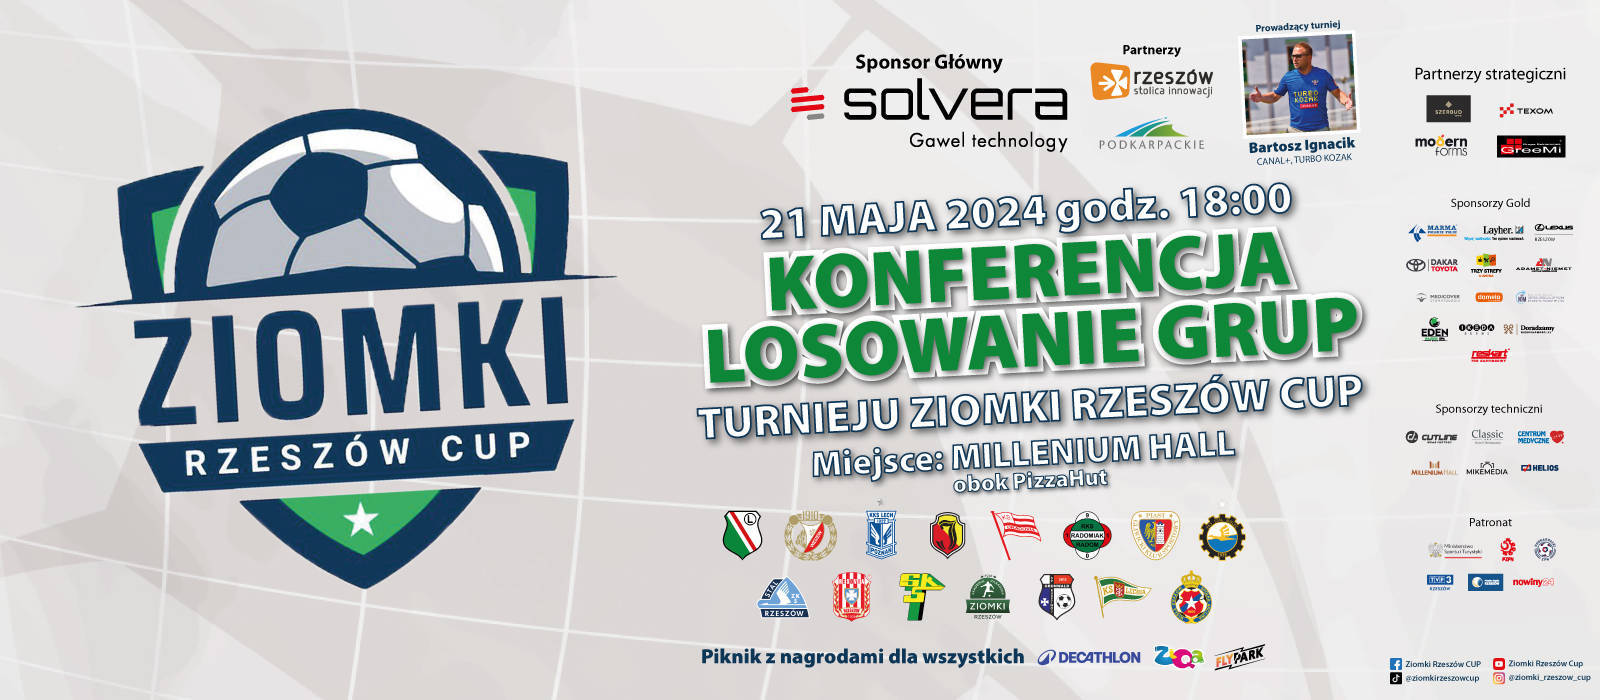 Konferencja prasowa i losowanie grup do ogólnopolskiego turnieju piłkarskiego chłopców Ziomki Rzeszów Cup - 1